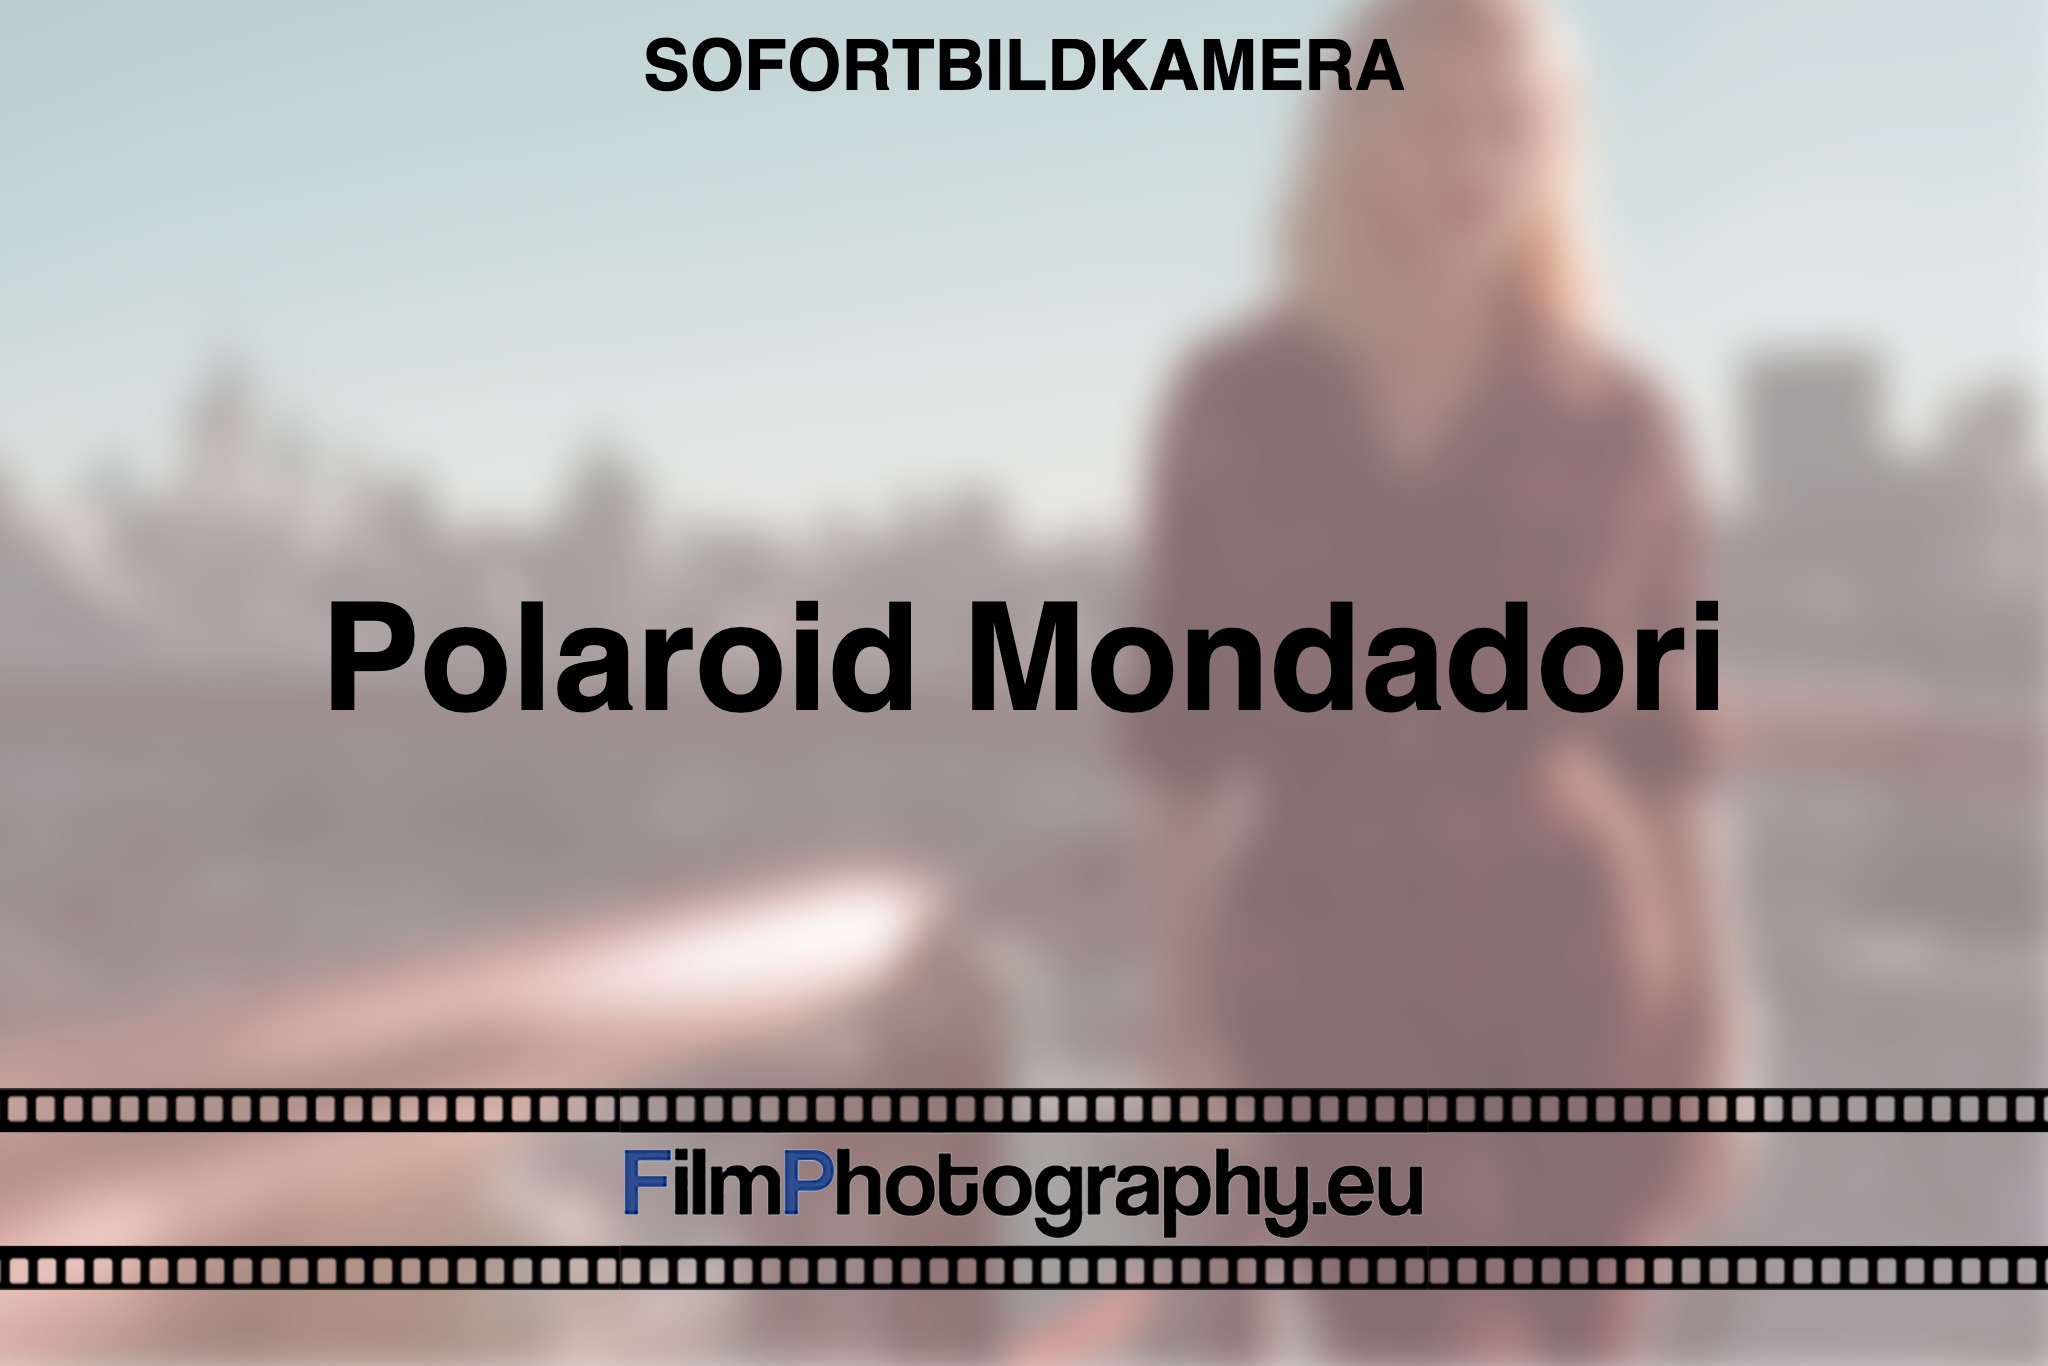 polaroid-mondadori-sofortbildkamera-bnv